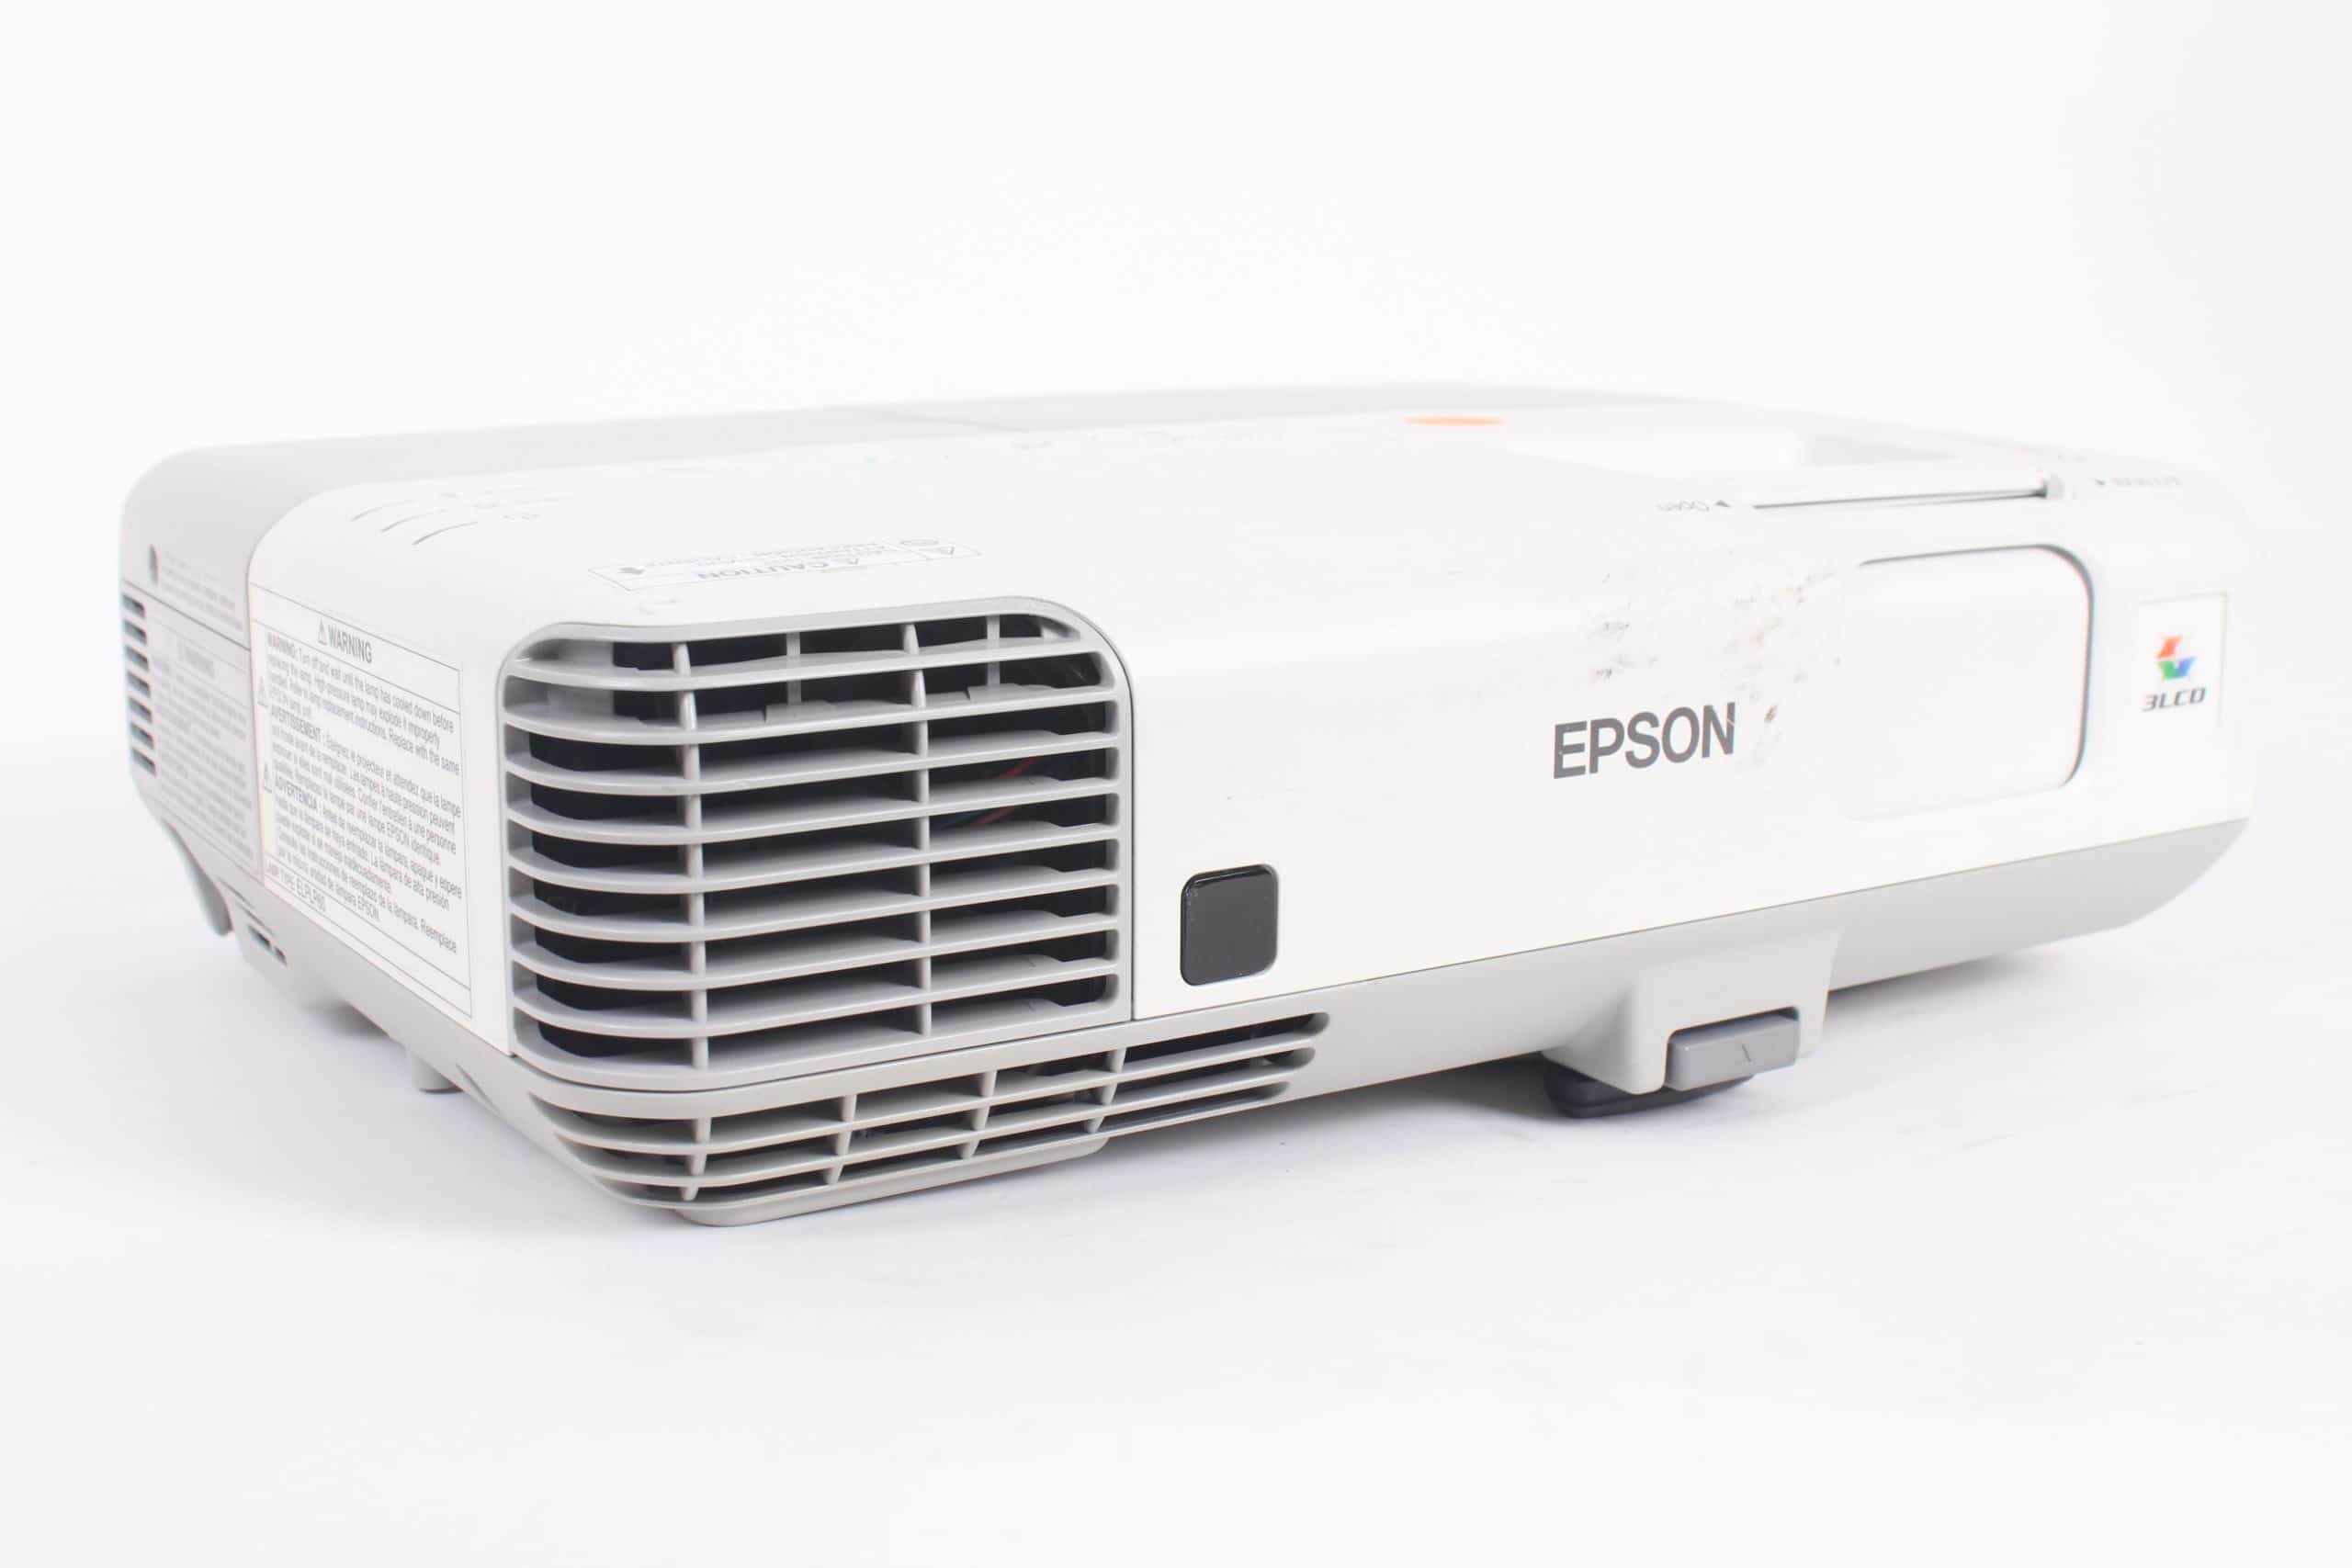 Epson PowerLite 95 V11H383020 3LCD XGA 2600 Lumen Projector for sale online